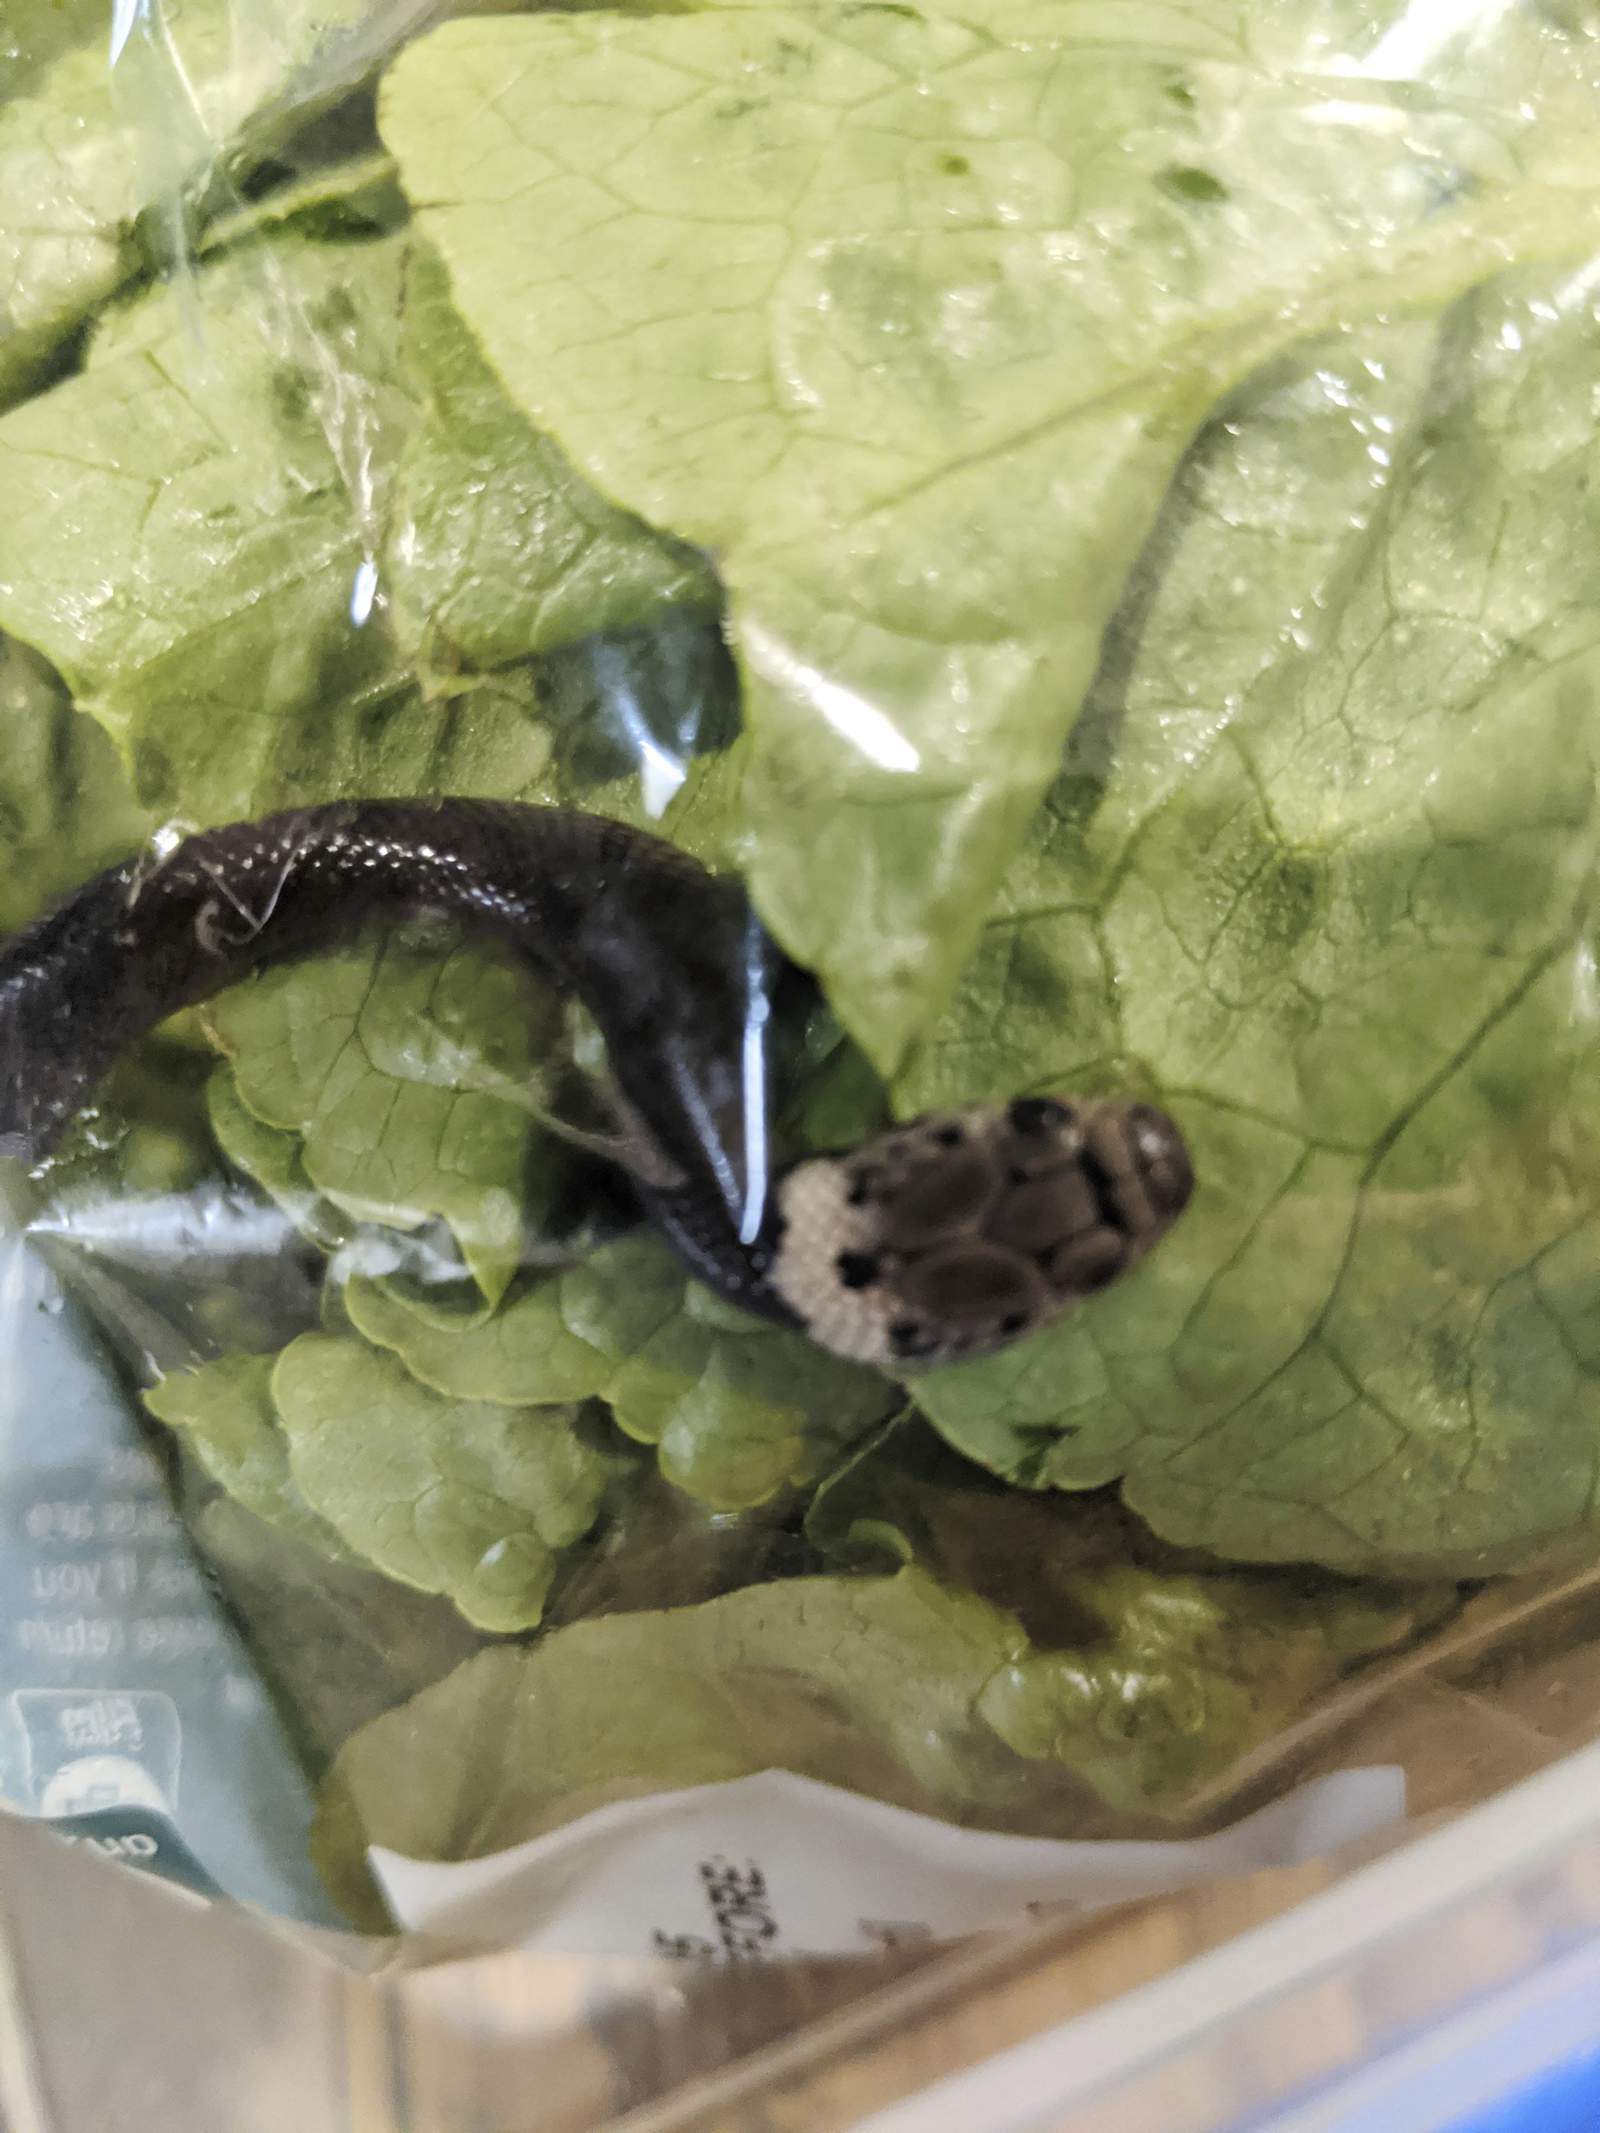 Man finds snake in lettuce bought at supermarket